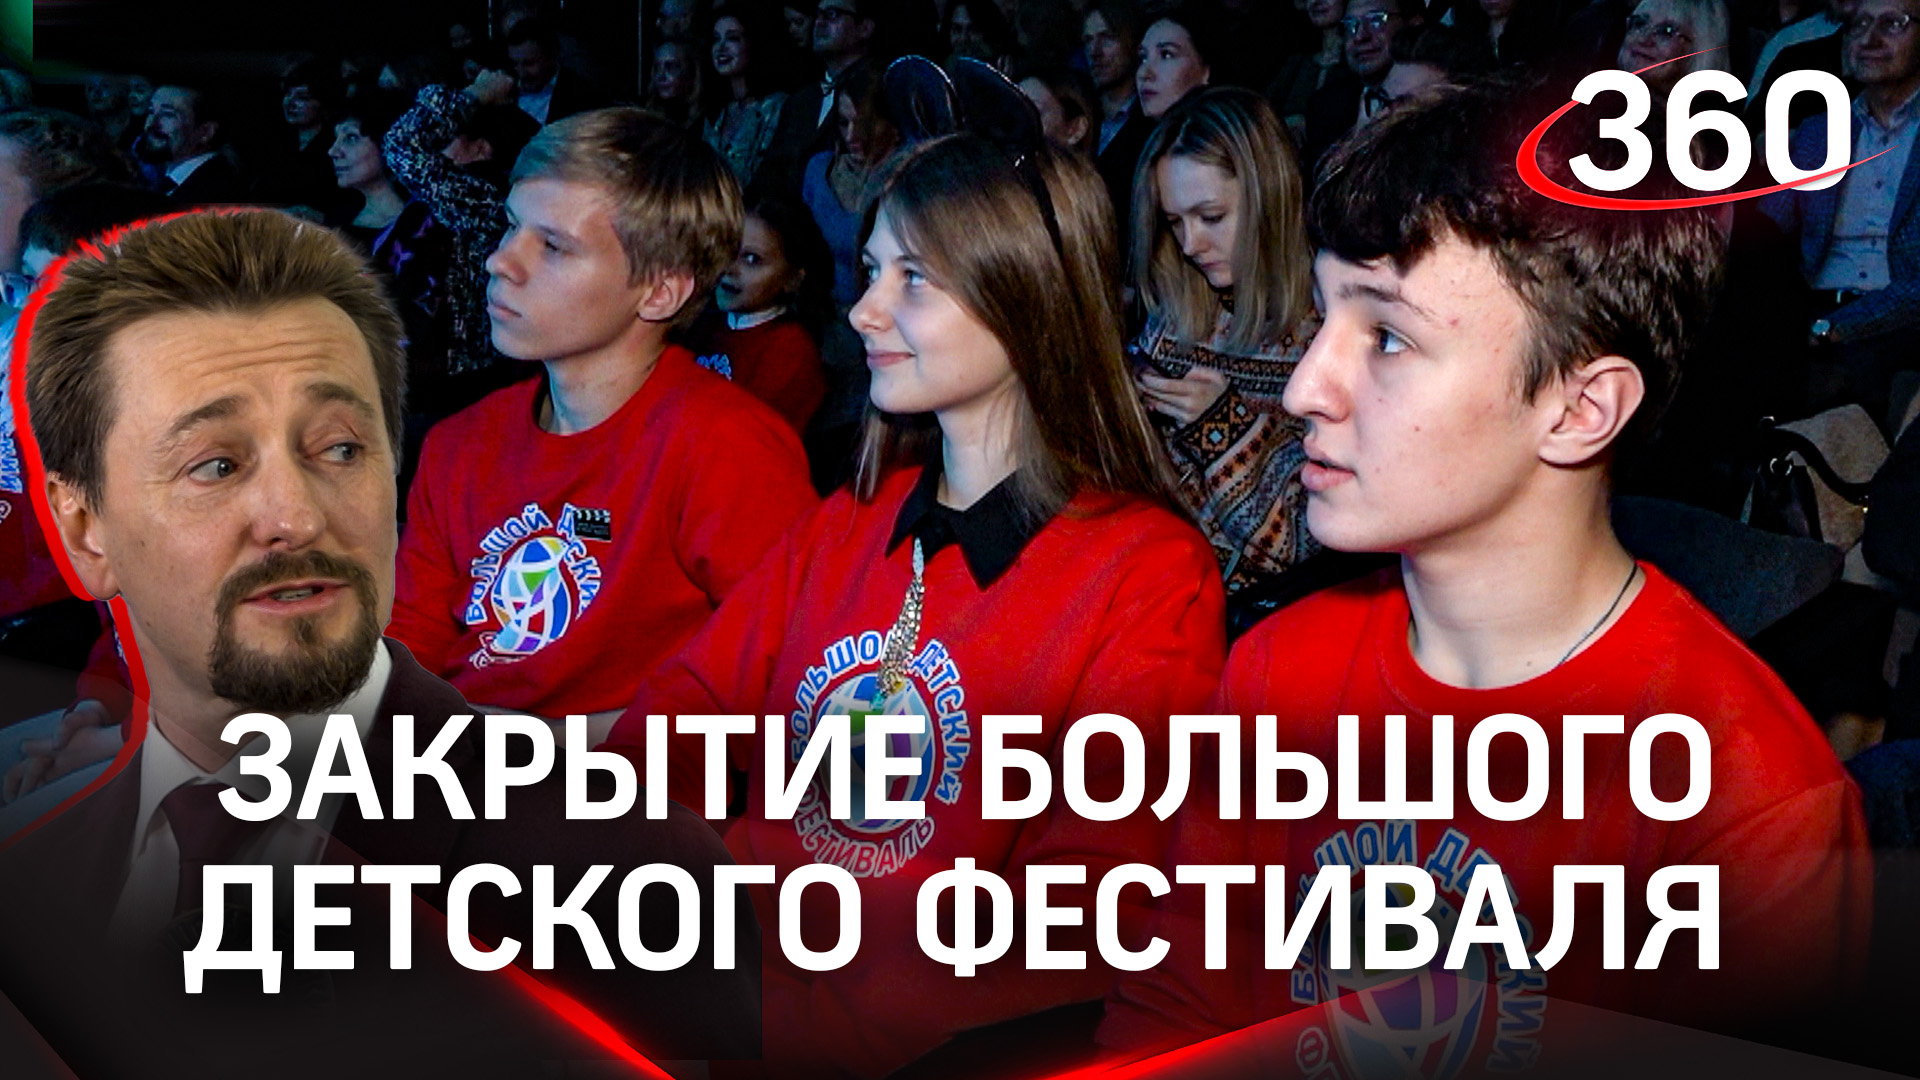 Дети - основа культуры: закрытие Большого Детского Фестиваля проходит в Москве